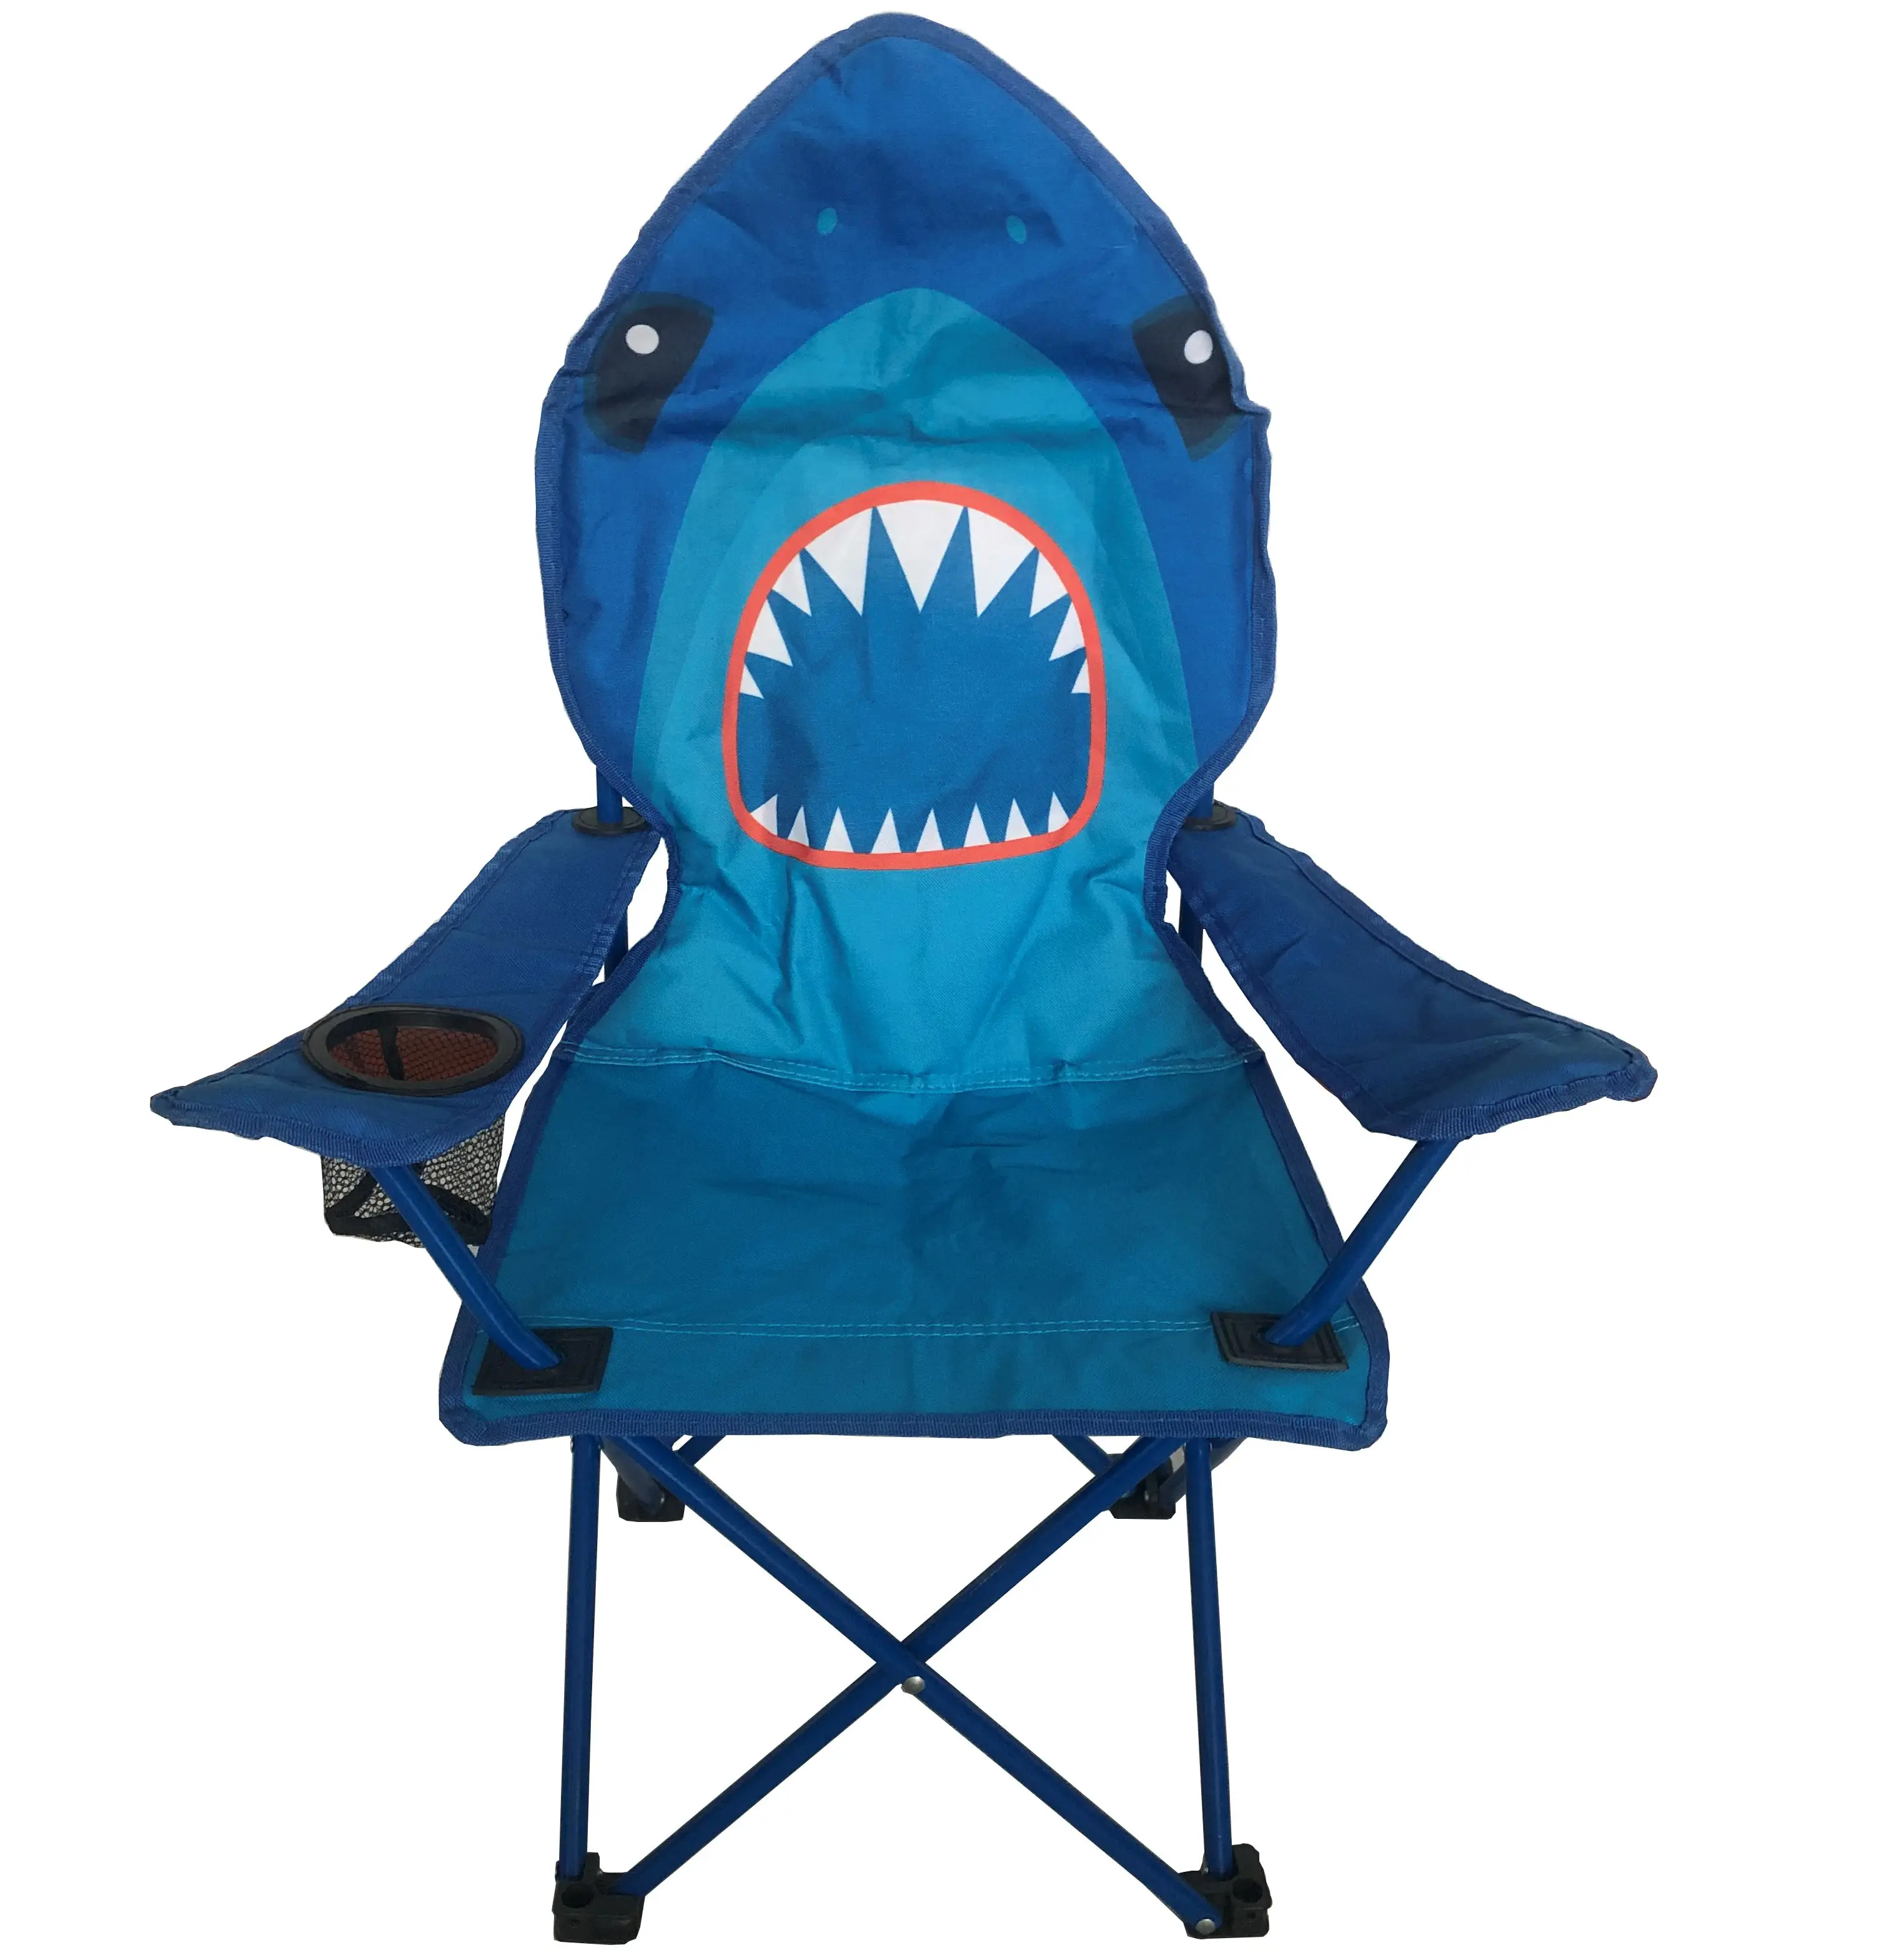 소형 휴대용 안전 멋진 만화 디자인 상어 유니콘 페인트 패딩 접는 캠핑 의자 팔걸이